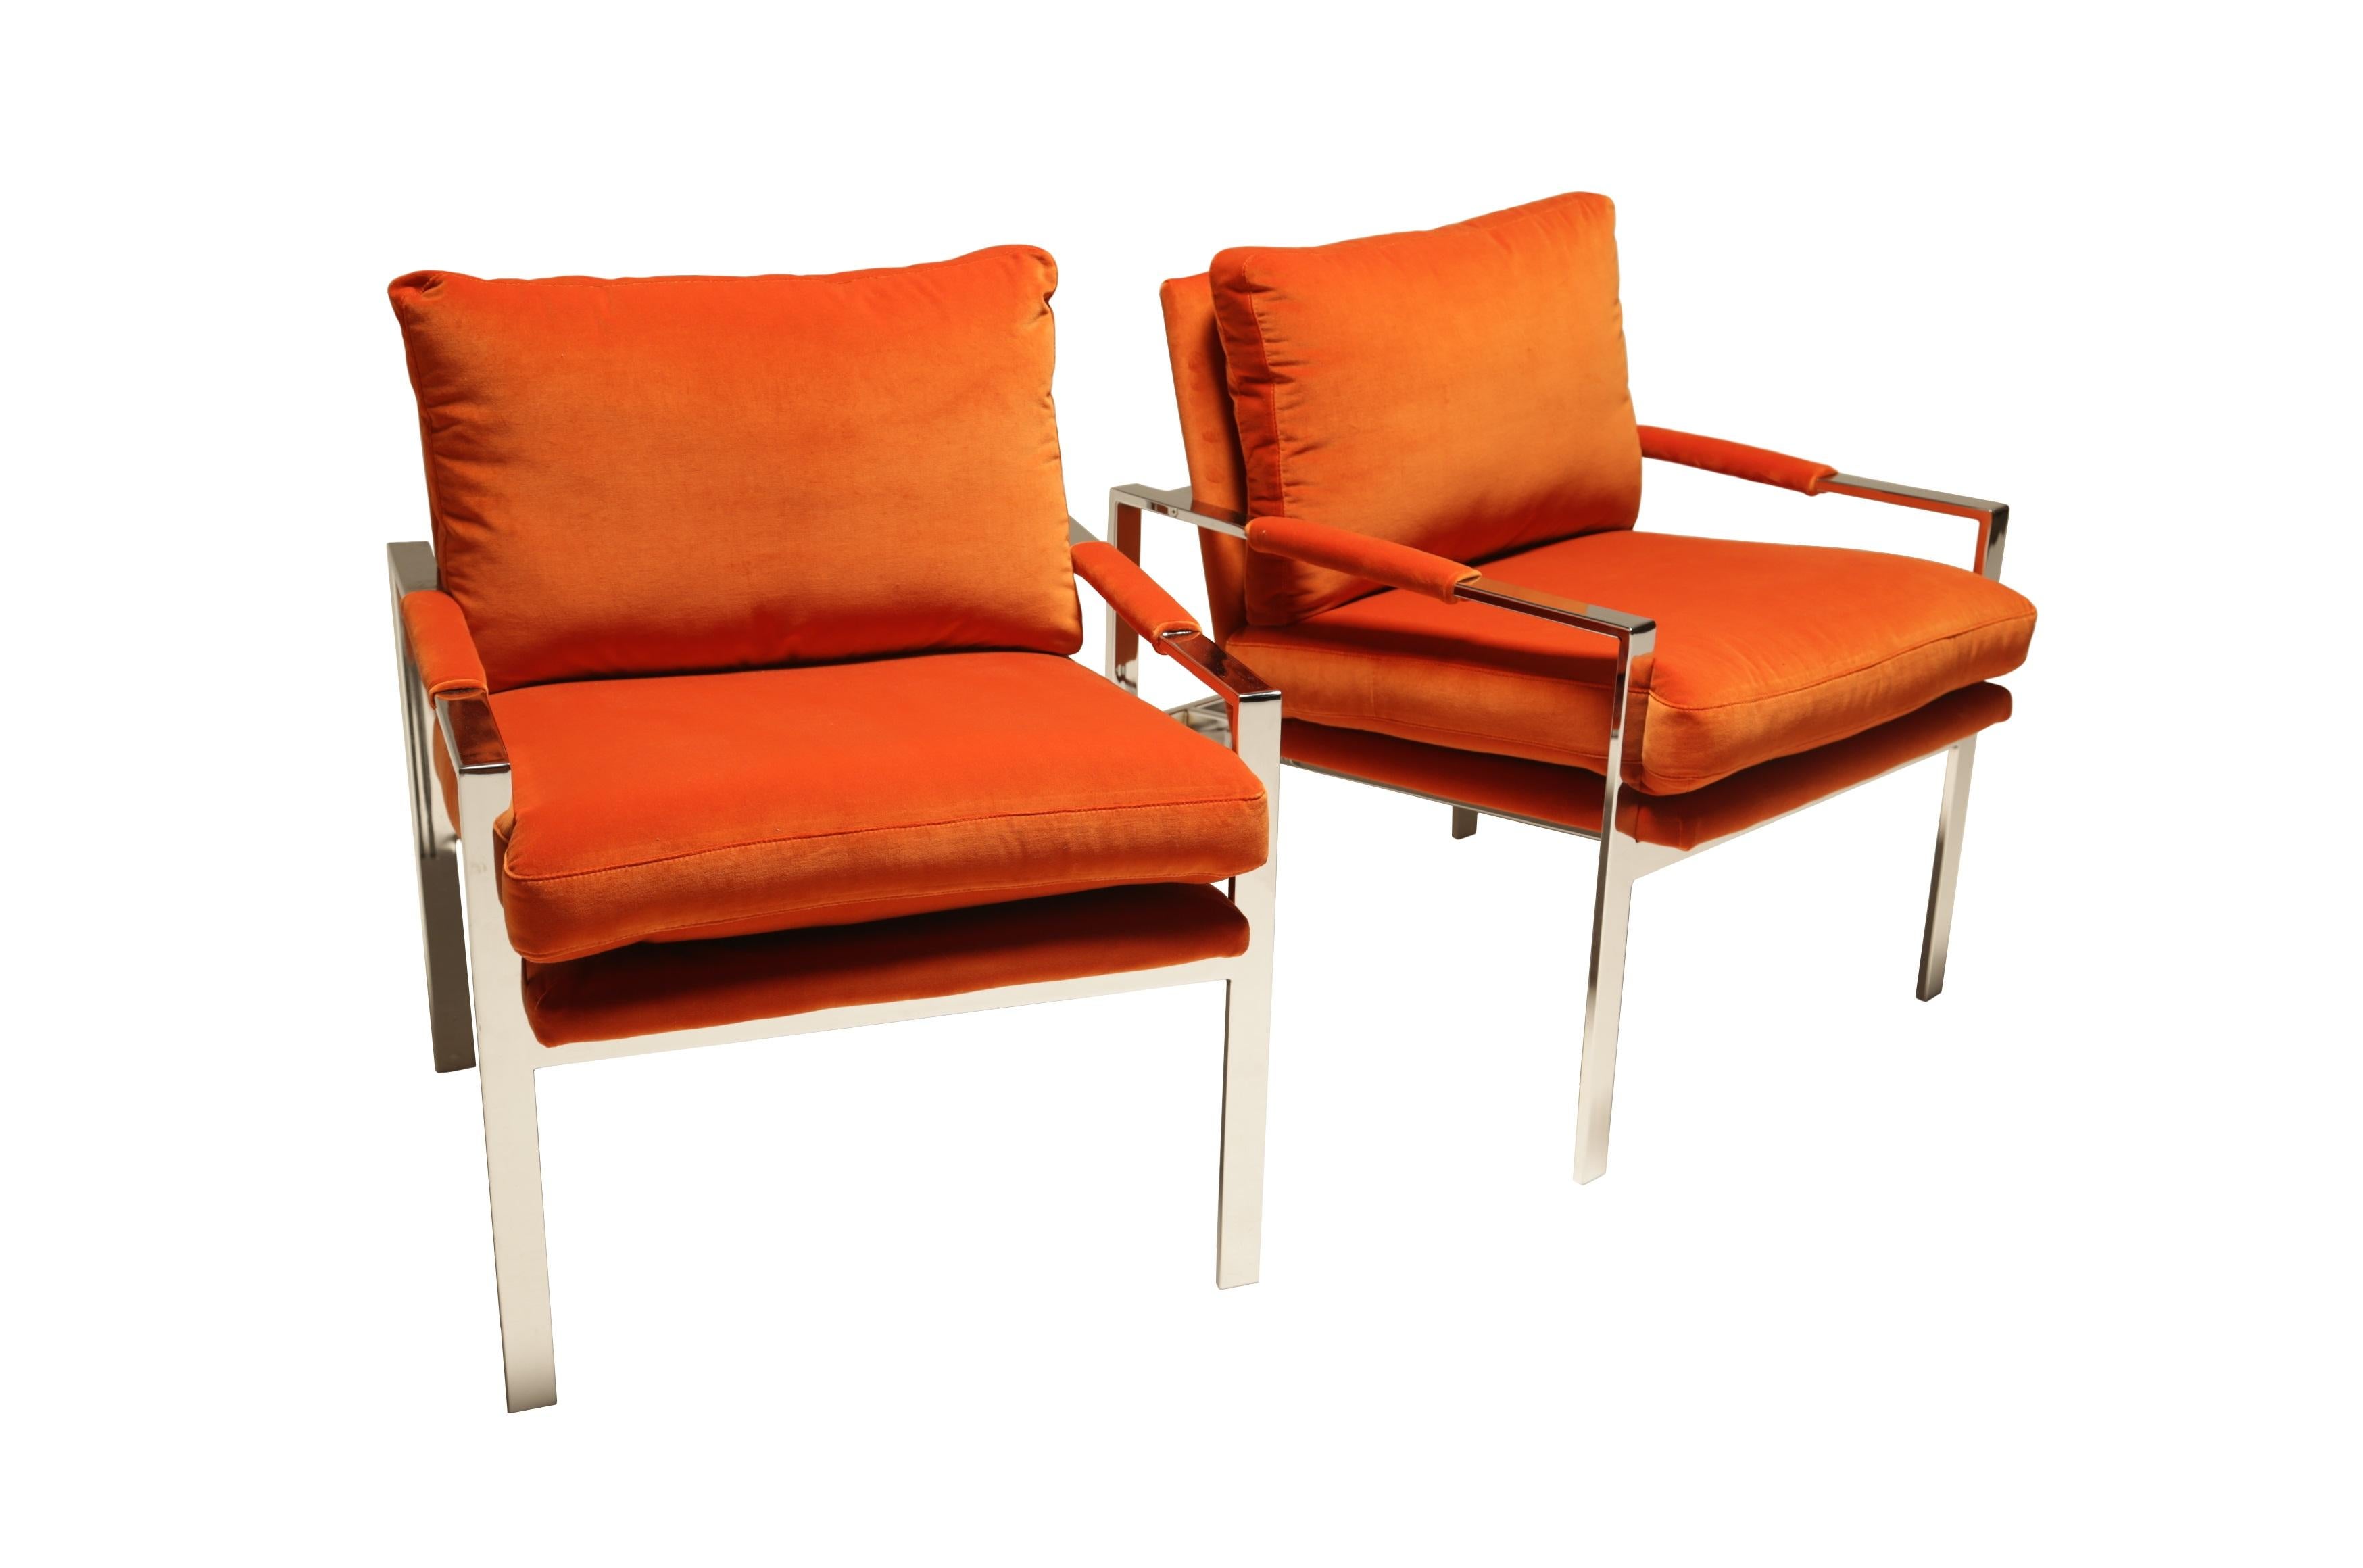 Wir bieten Ihnen ein Paar flache Sessel von Milo Baughman an. Das 1966 entworfene Modell 951 ist einer der bekanntesten modernen Sessel aus der Mitte des Jahrhunderts. Jeder Stuhl verfügt über ein schlankes, quadratisches Gestell aus verchromtem